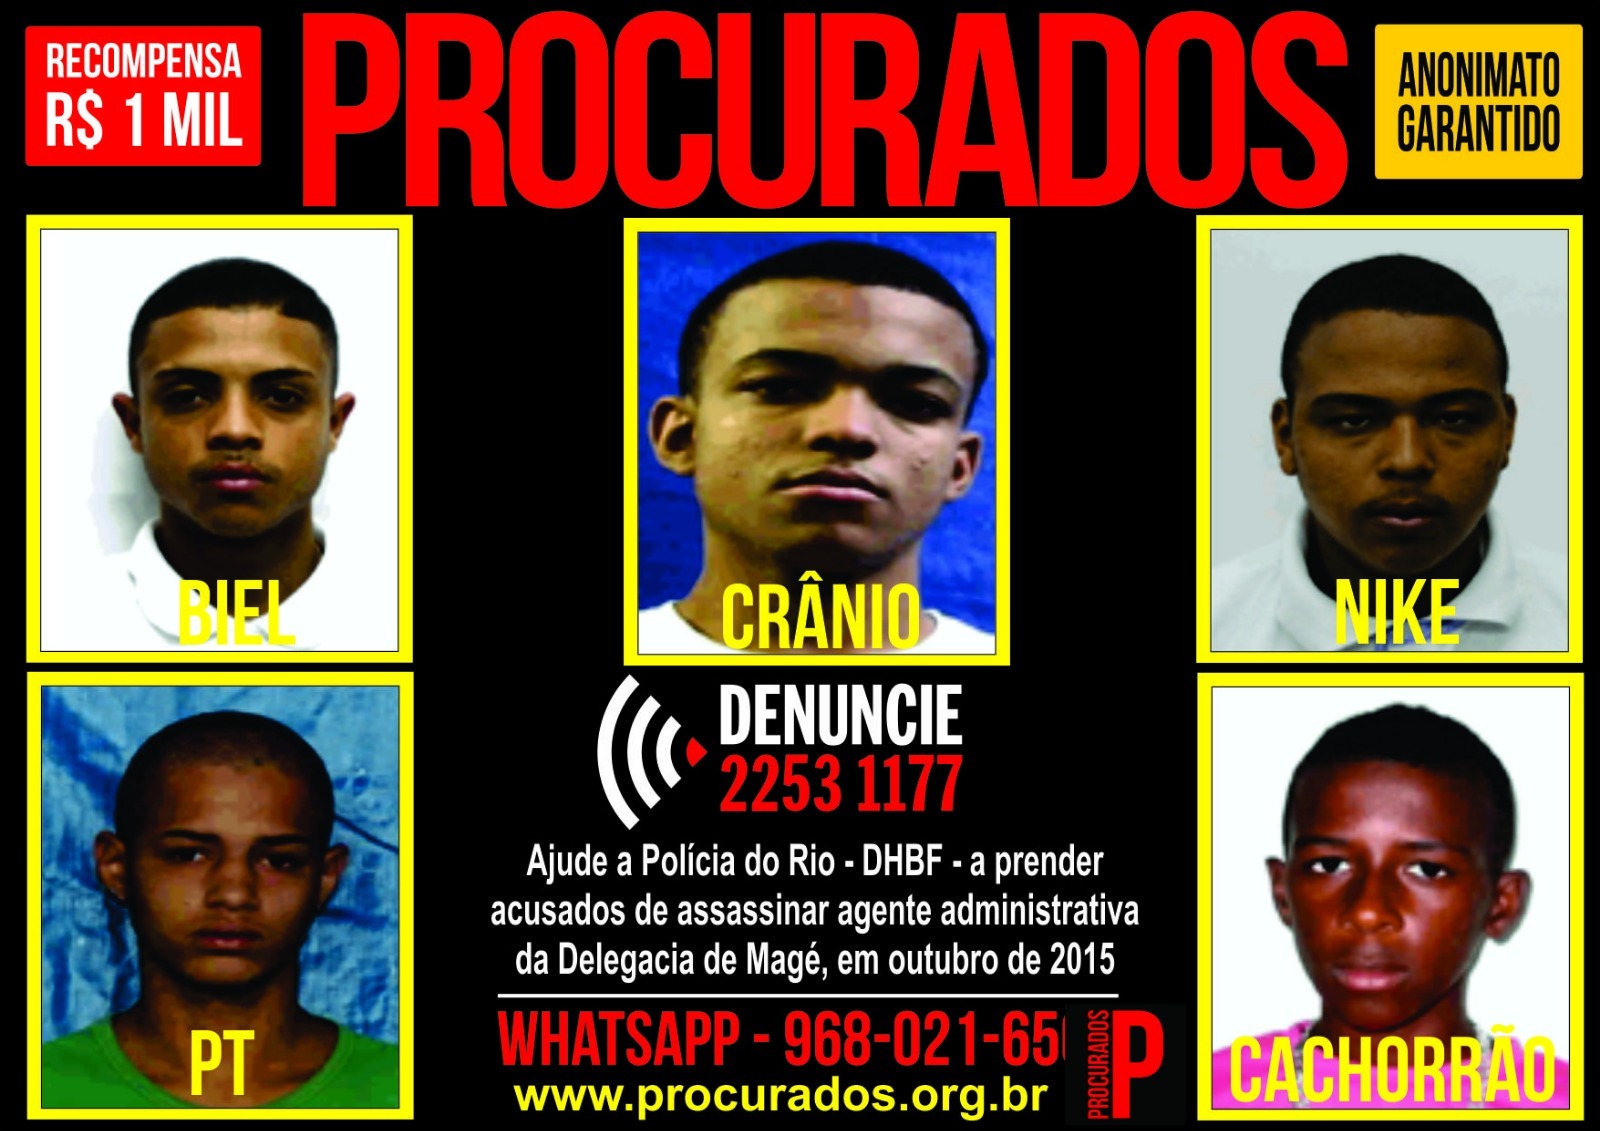 Portal dos Procurados divulga cartaz dos acusados de assassinar uma agente administrativa da delegacia de Magé